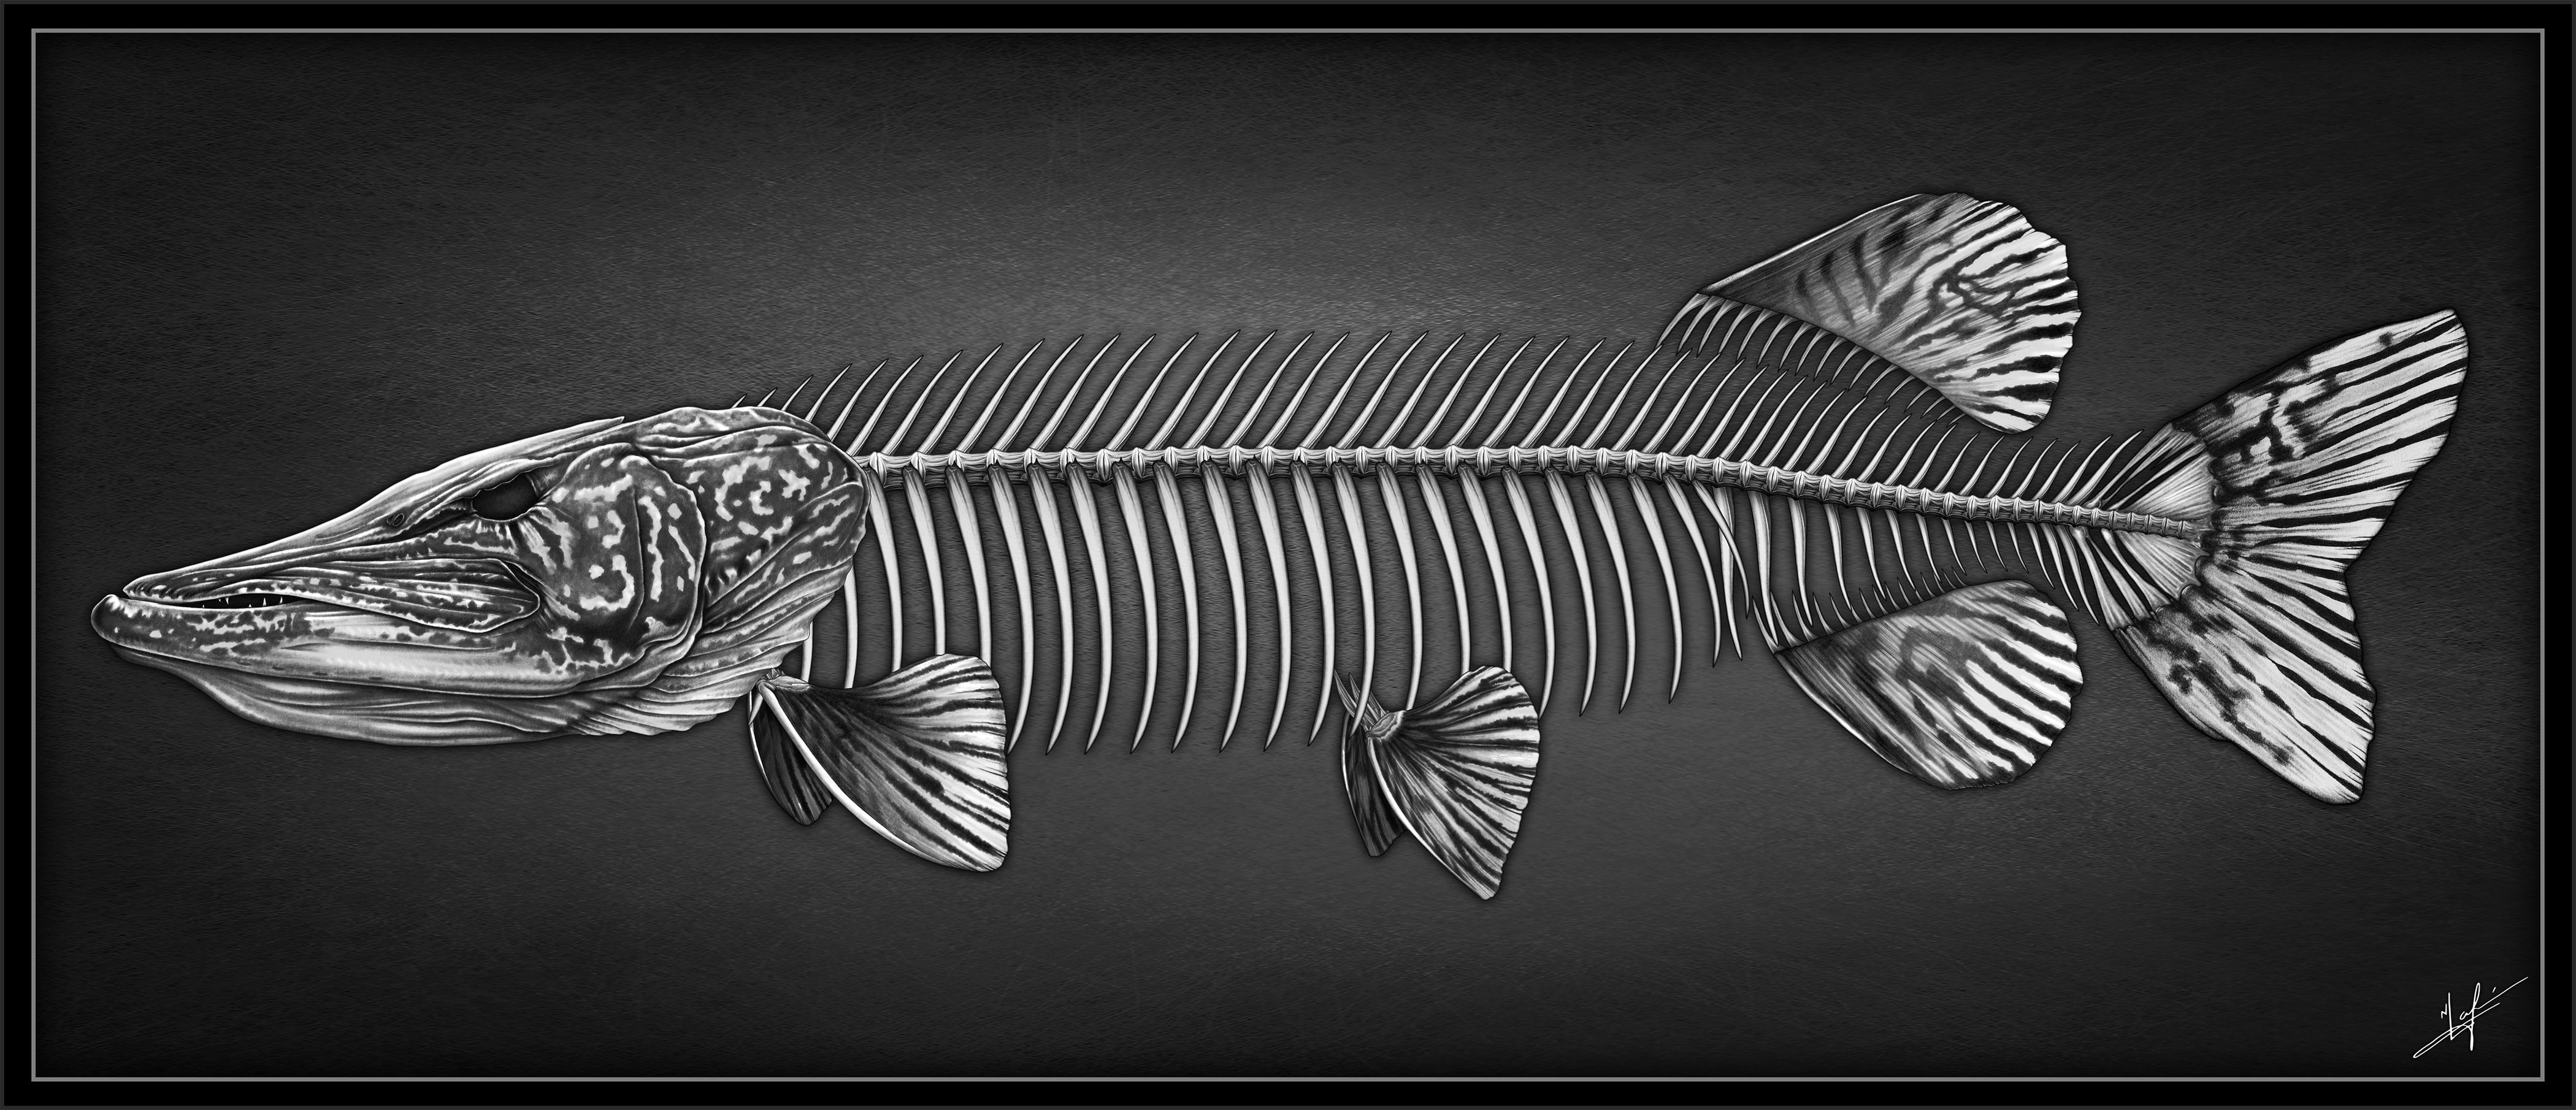 Fish Skeleton Drawing Stunning Sketch